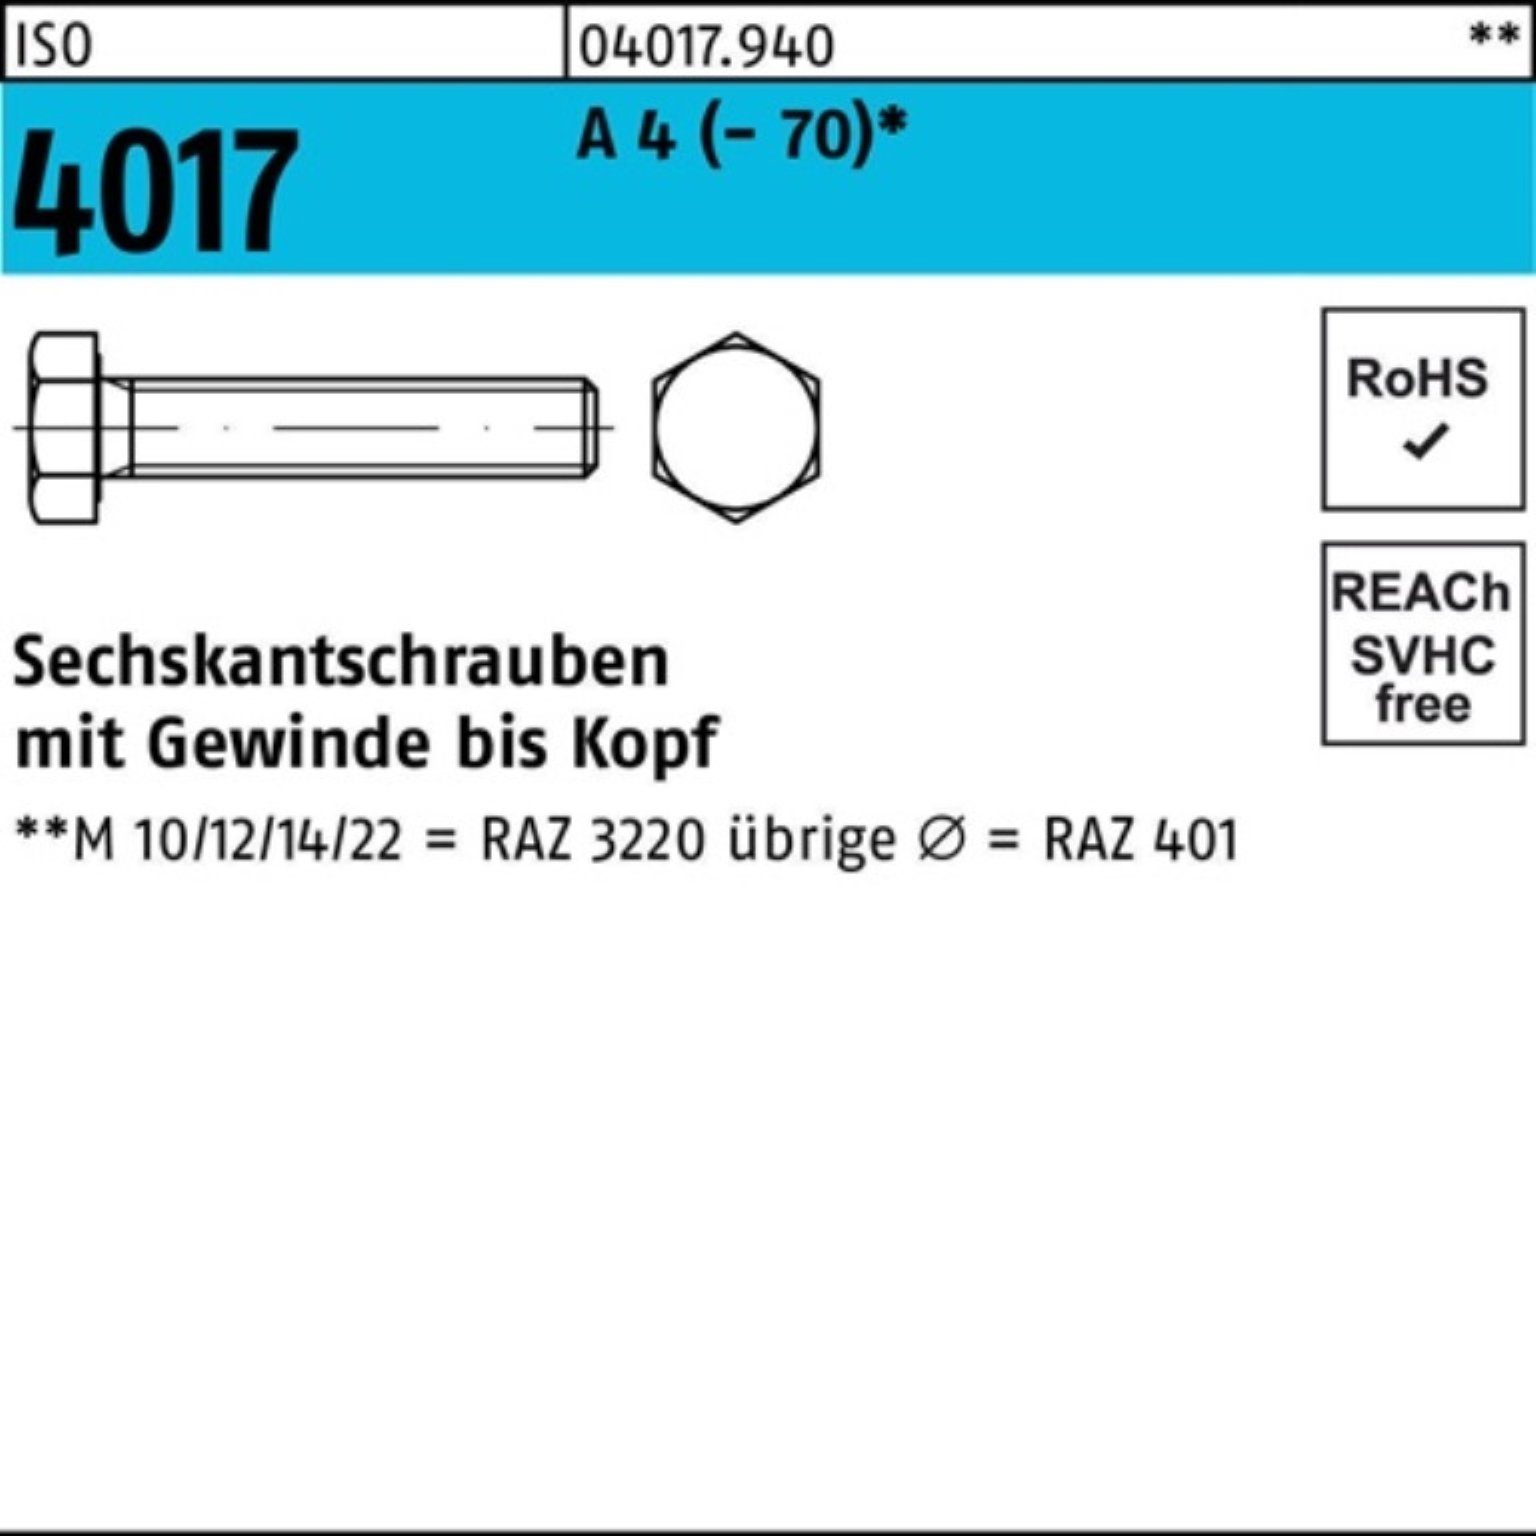 Bufab VG 1 4017 A Stück 100er ISO M20x Sechskantschraube 4 (70) Pack Sechskantschraube 110